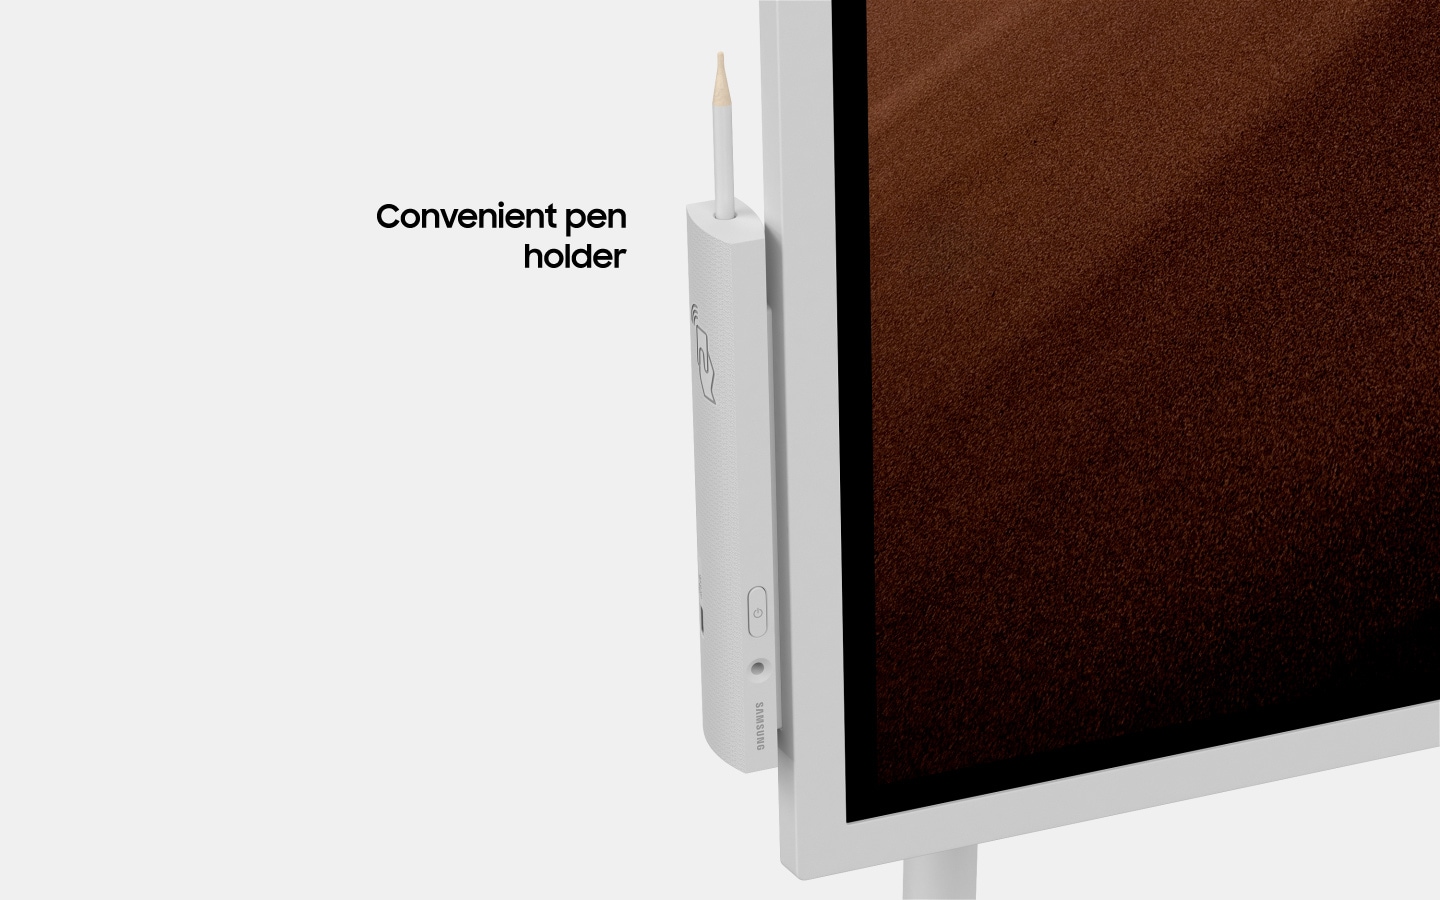 Een afbeelding van een uitvergrote Samsung Flip-pennenhouder, met NFC-tag en de tekst "Handige pennenhouder". (6-3)